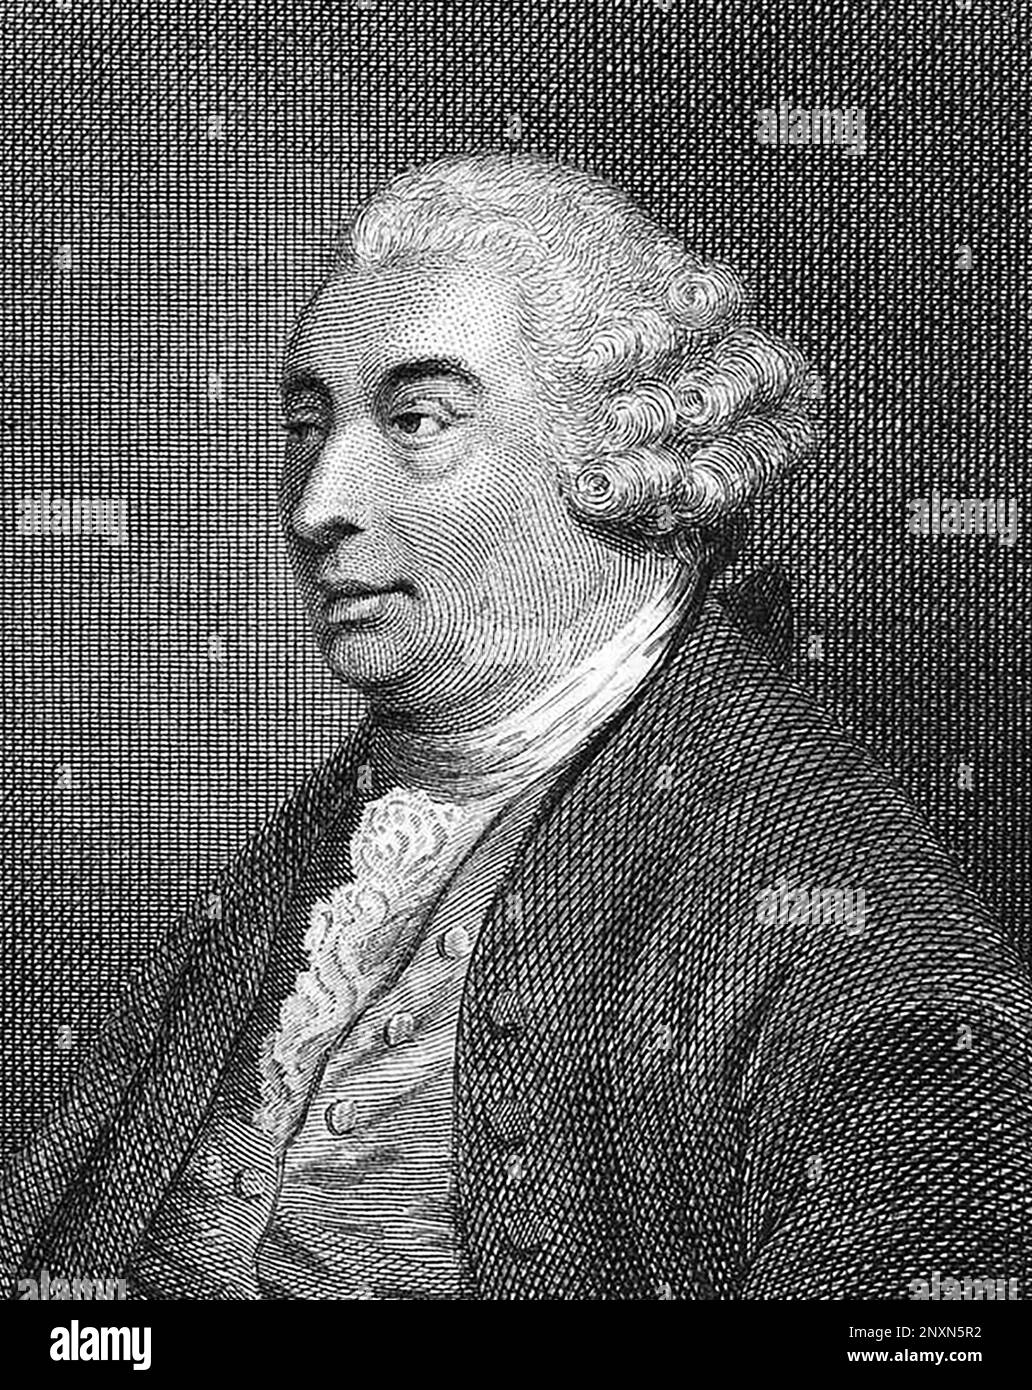 David Hume (1711-1776), philosophe, historien et économiste écossais des Lumières, connu aujourd'hui pour son système très influent d'empirisme philosophique, de scepticisme et de naturalisme. Imprimé non daté de Joseph Collyer, (1748-1827) d'après Thomas Stothard (1755-1834). Banque D'Images